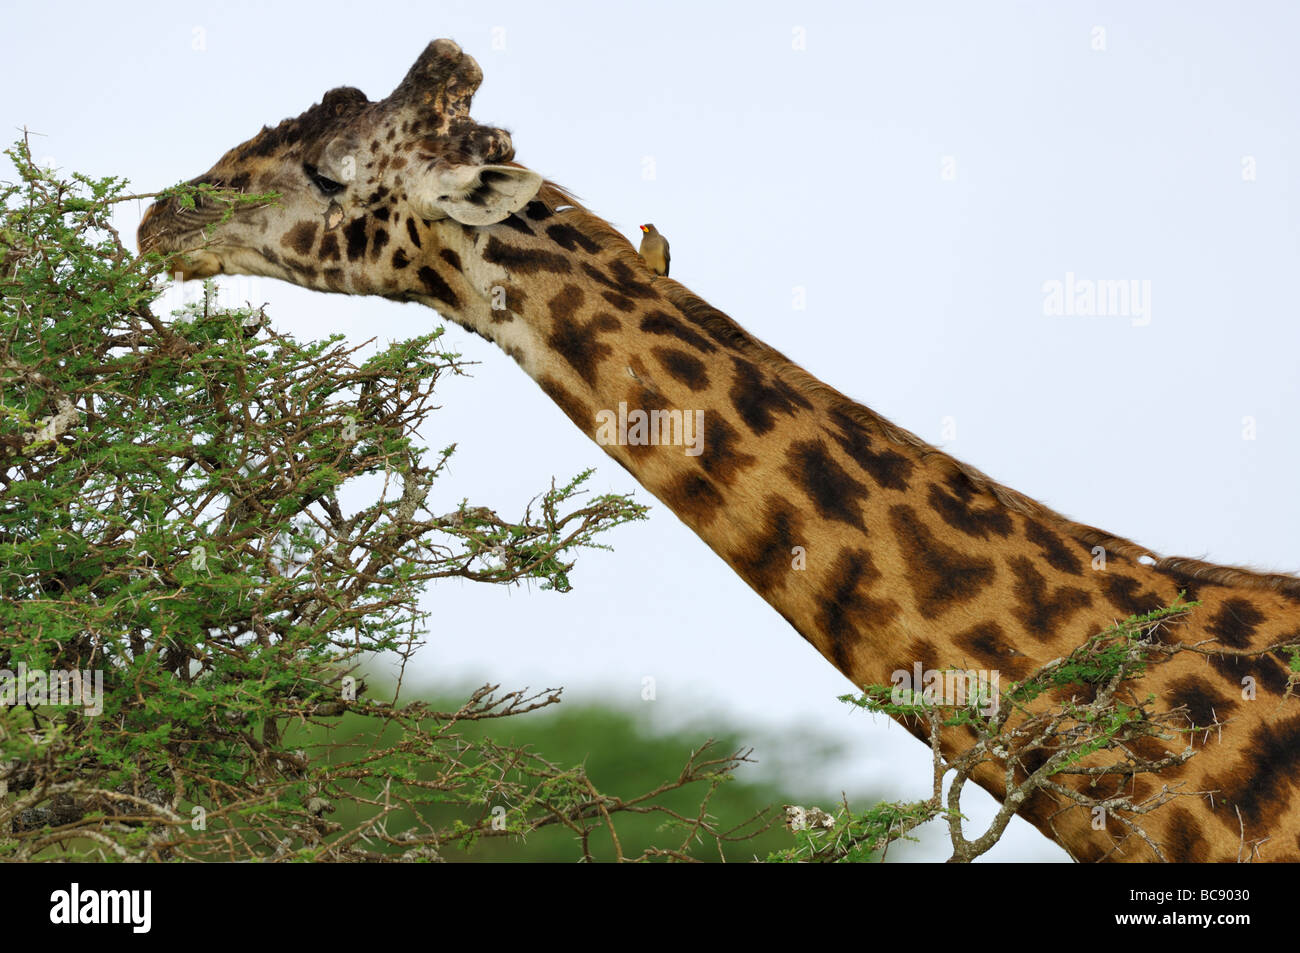 Stock photo of a Masai giraffe eating from the top of an acacia tree, Ndutu, Tanzania, 2009. Stock Photo